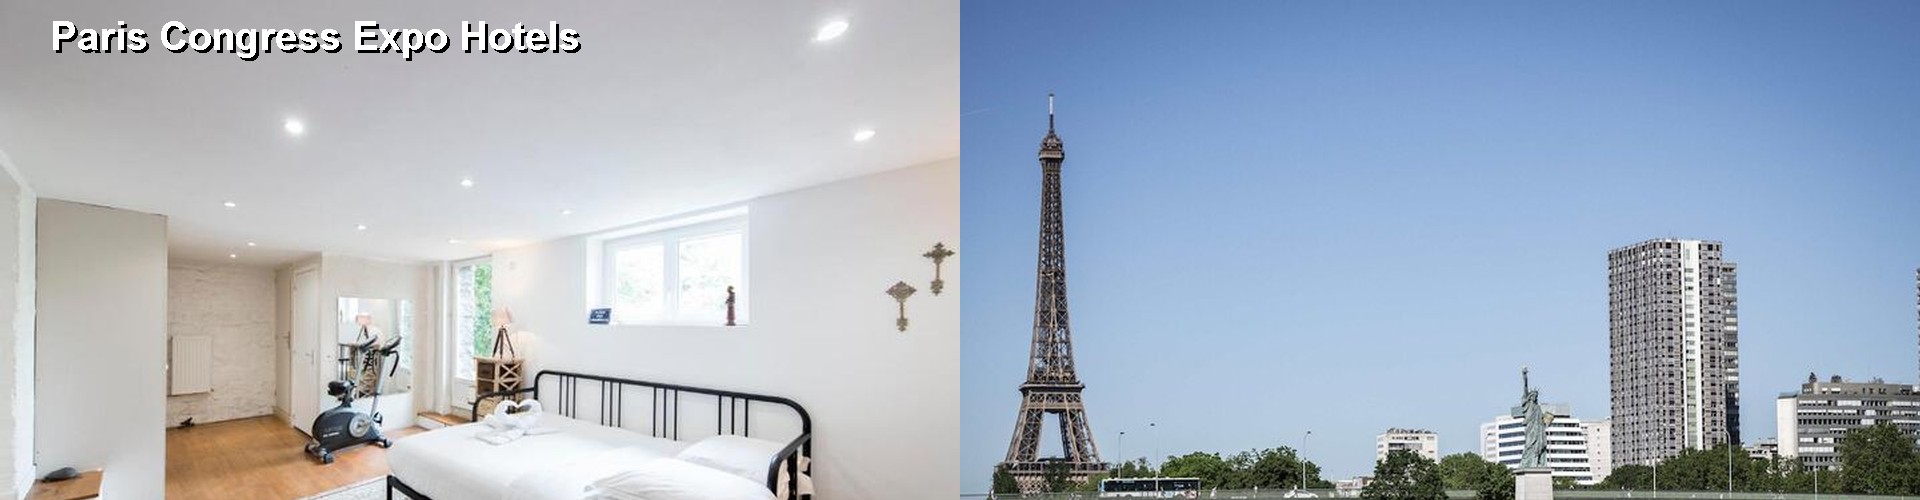 5 Best Hotels near Paris Congress Expo